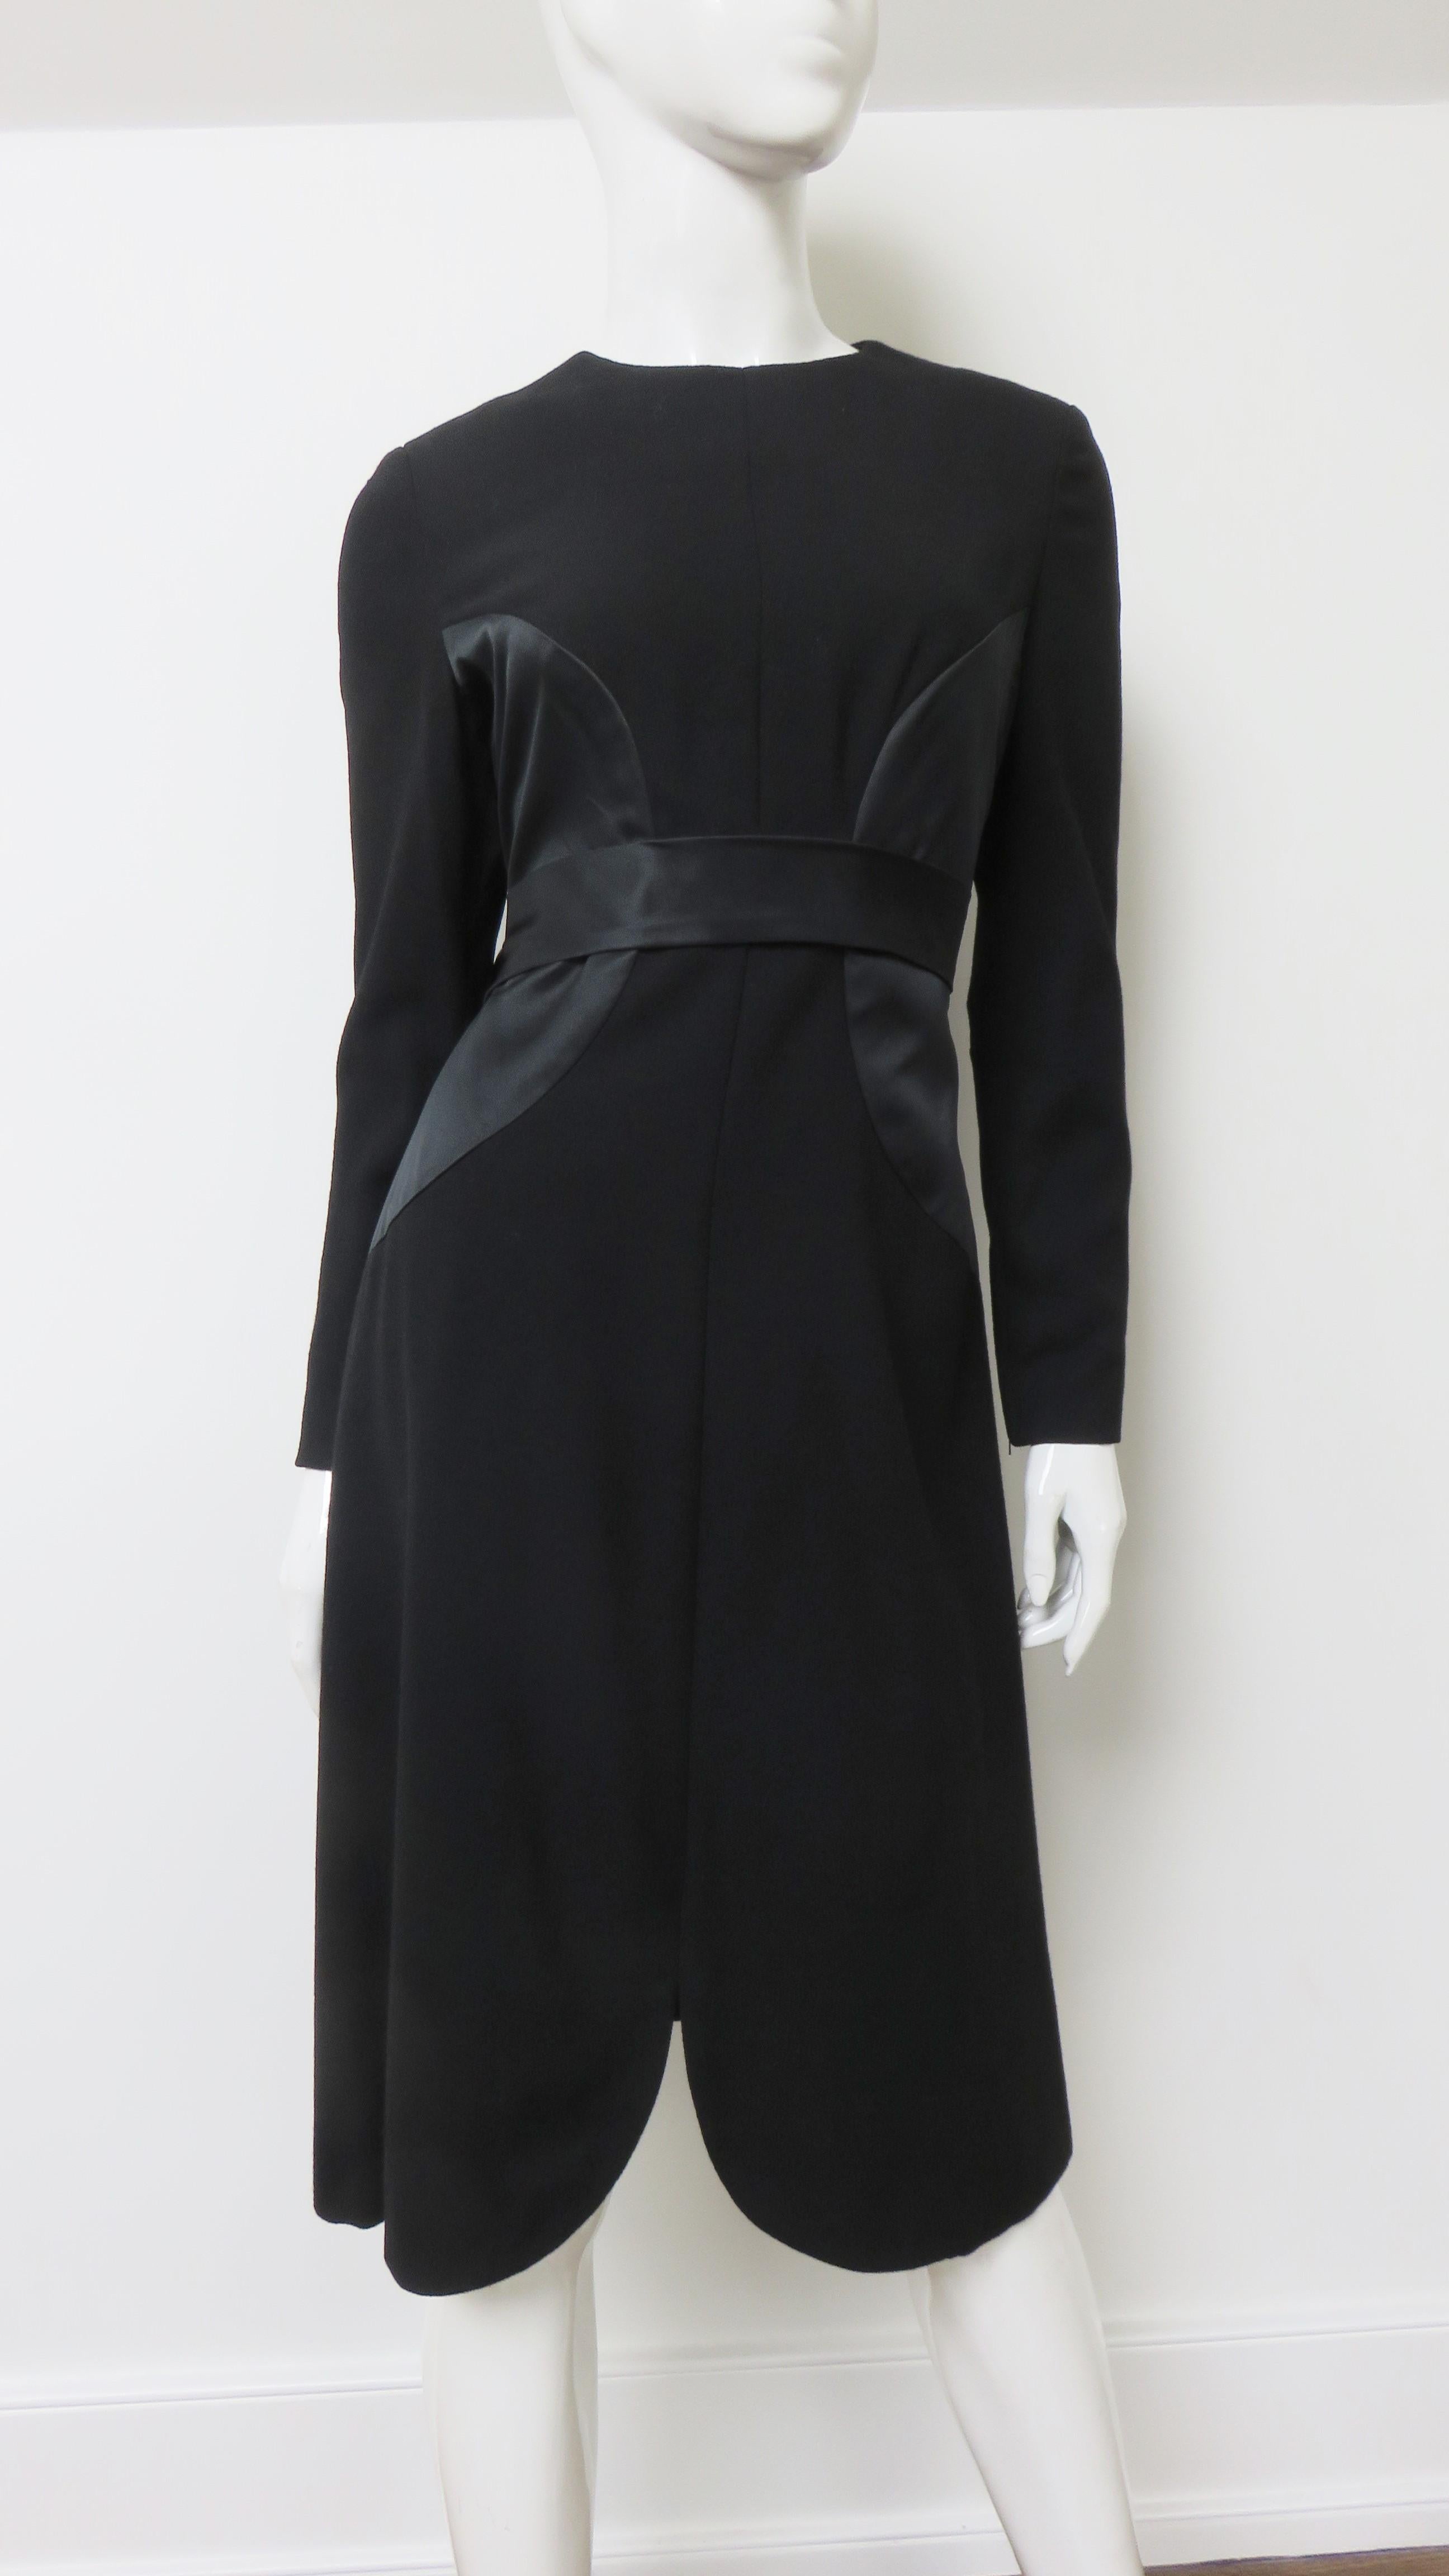 Une magnifique robe noire de Bill Billing. Il est doté de manches longues avec poignets zippés et d'une subtile jupe en ligne A.  Elle est semi-ajustée et comporte de grands empiècements circulaires en soie de chaque côté de la taille, assortis à la